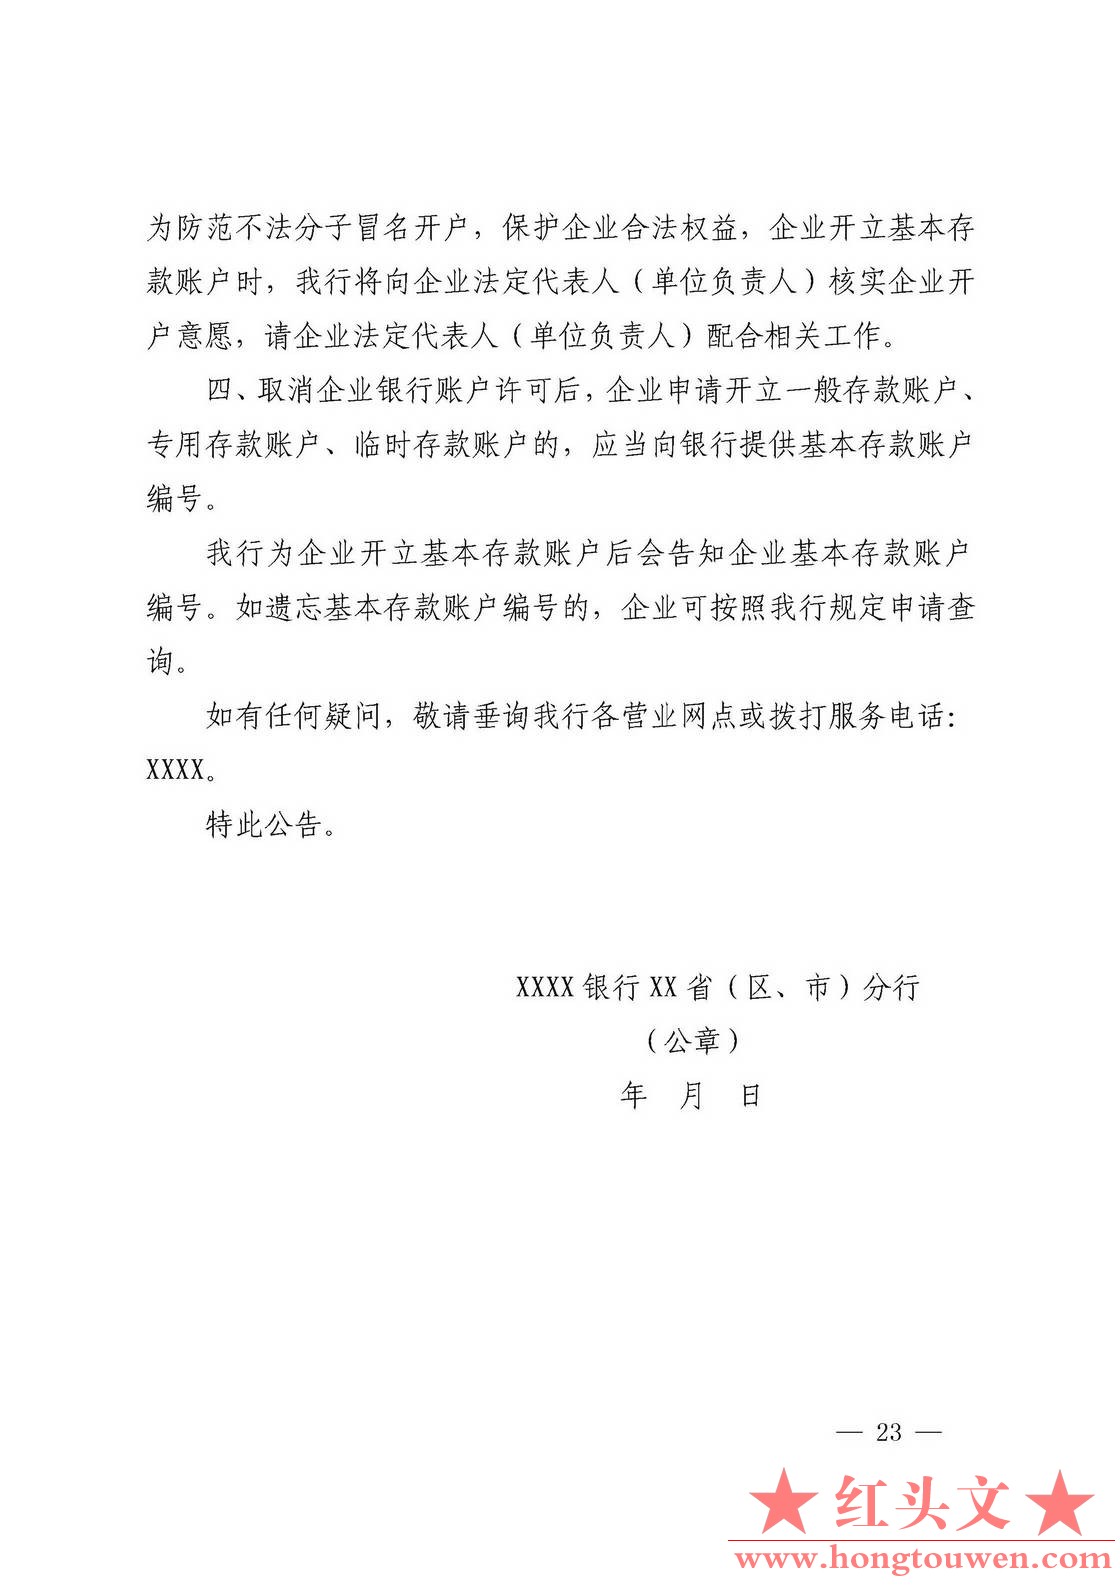 银发[2019]41号-中国人民银行关于取消企业银行账户许可的通知_页面_23.jpg.jpg